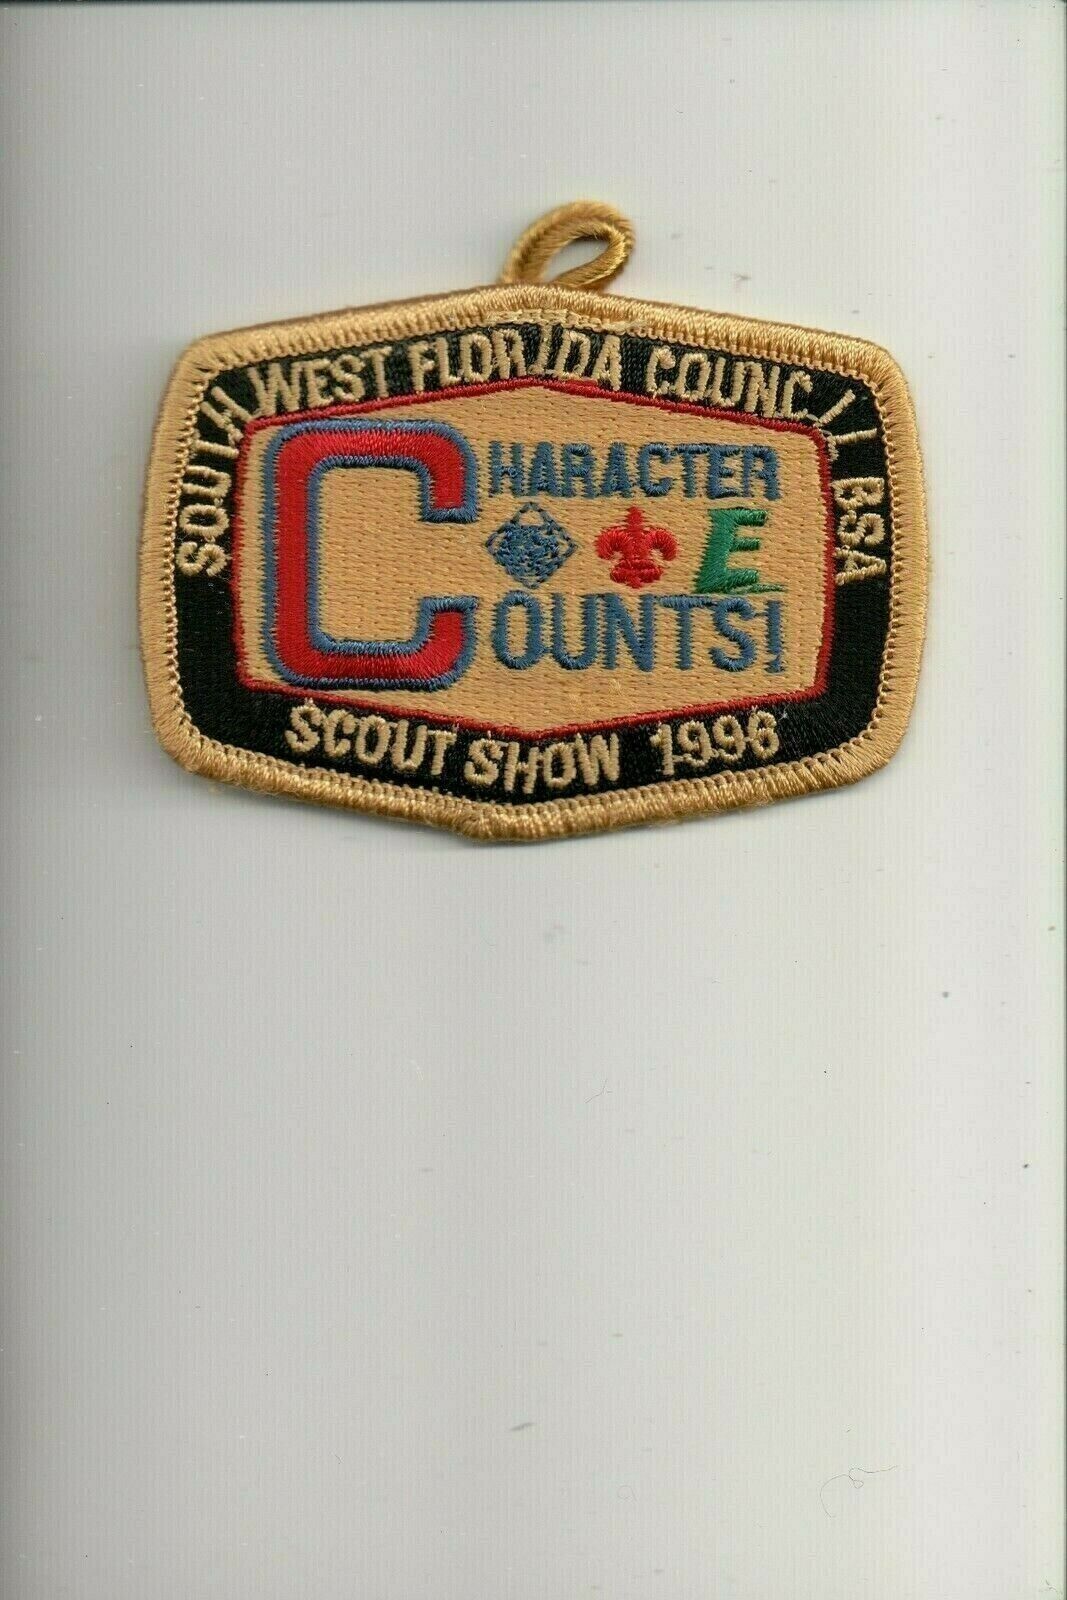 1996 Southwest Florida Council Scout Show patch